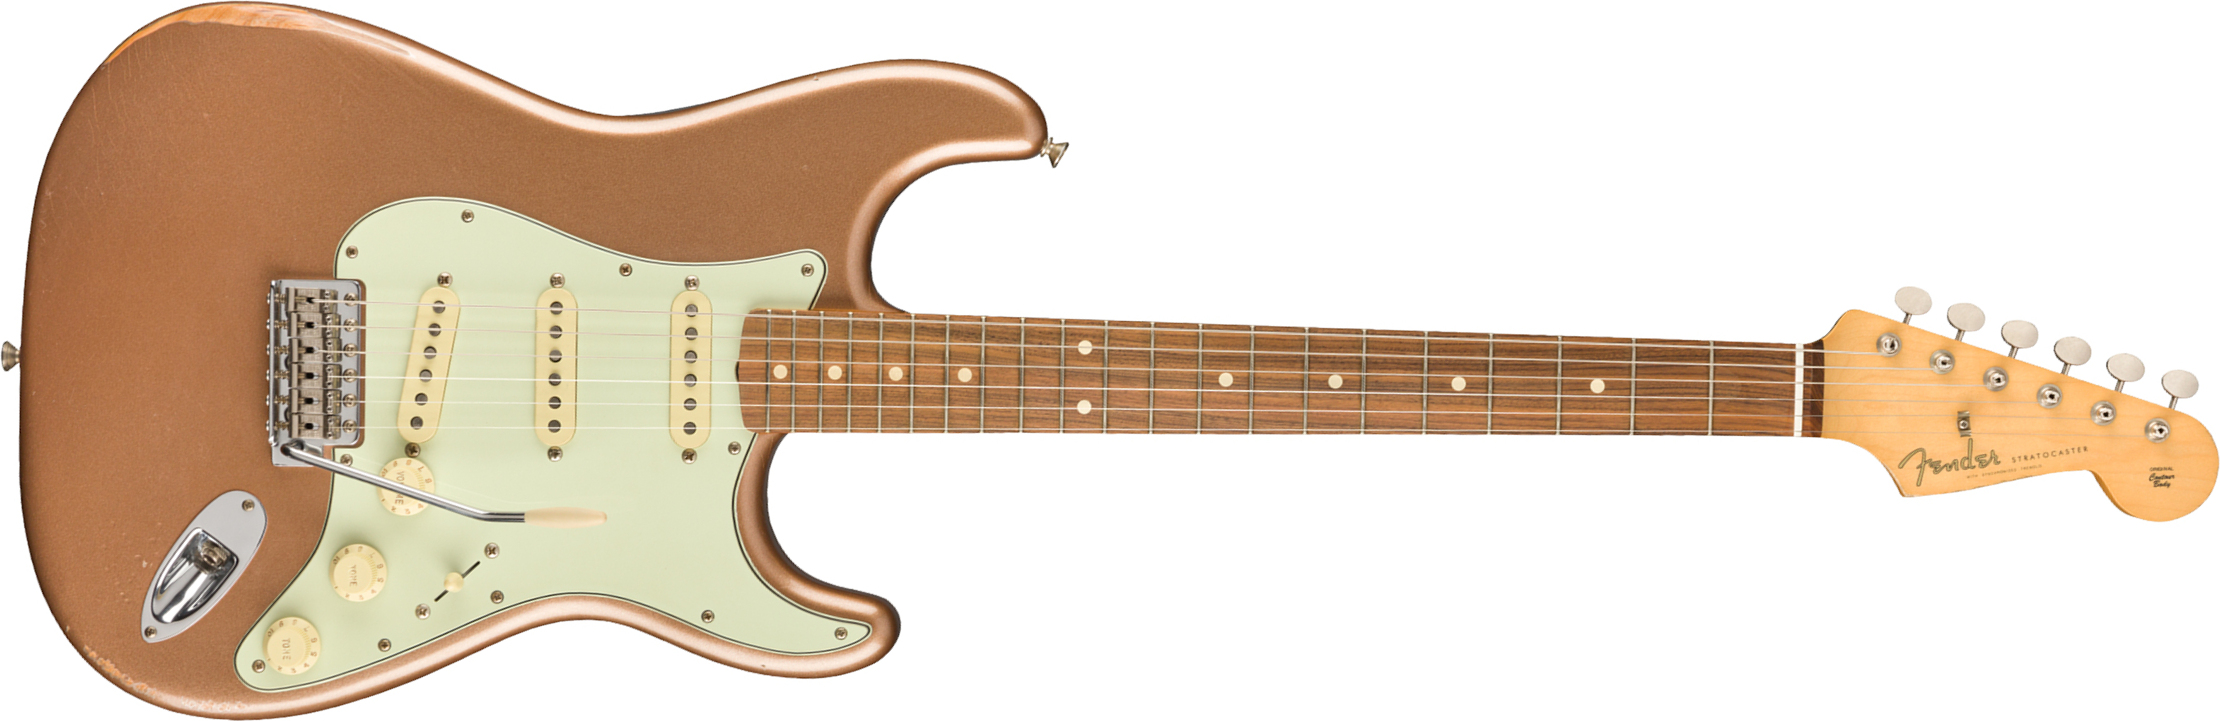 Fender Strat 60s Road Worn Mex Pf - Firemist Gold - Elektrische gitaar in Str-vorm - Main picture